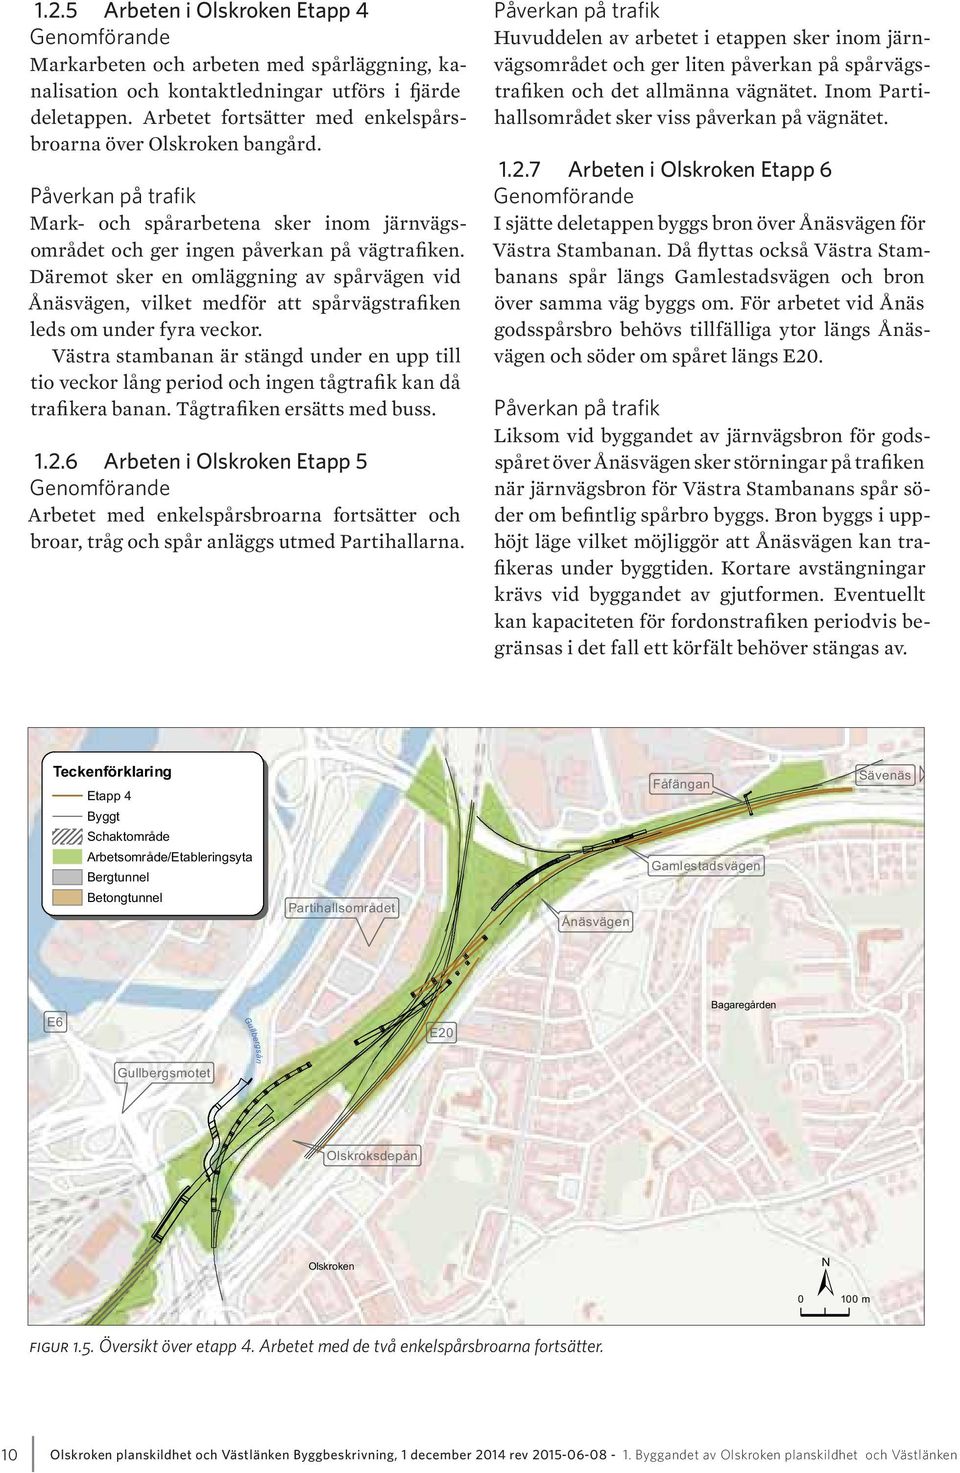 Däremot sker en omläggning av spårvägen vid Ånäsvägen, vilket medför att spårvägstrafiken leds om under fyra veckor.